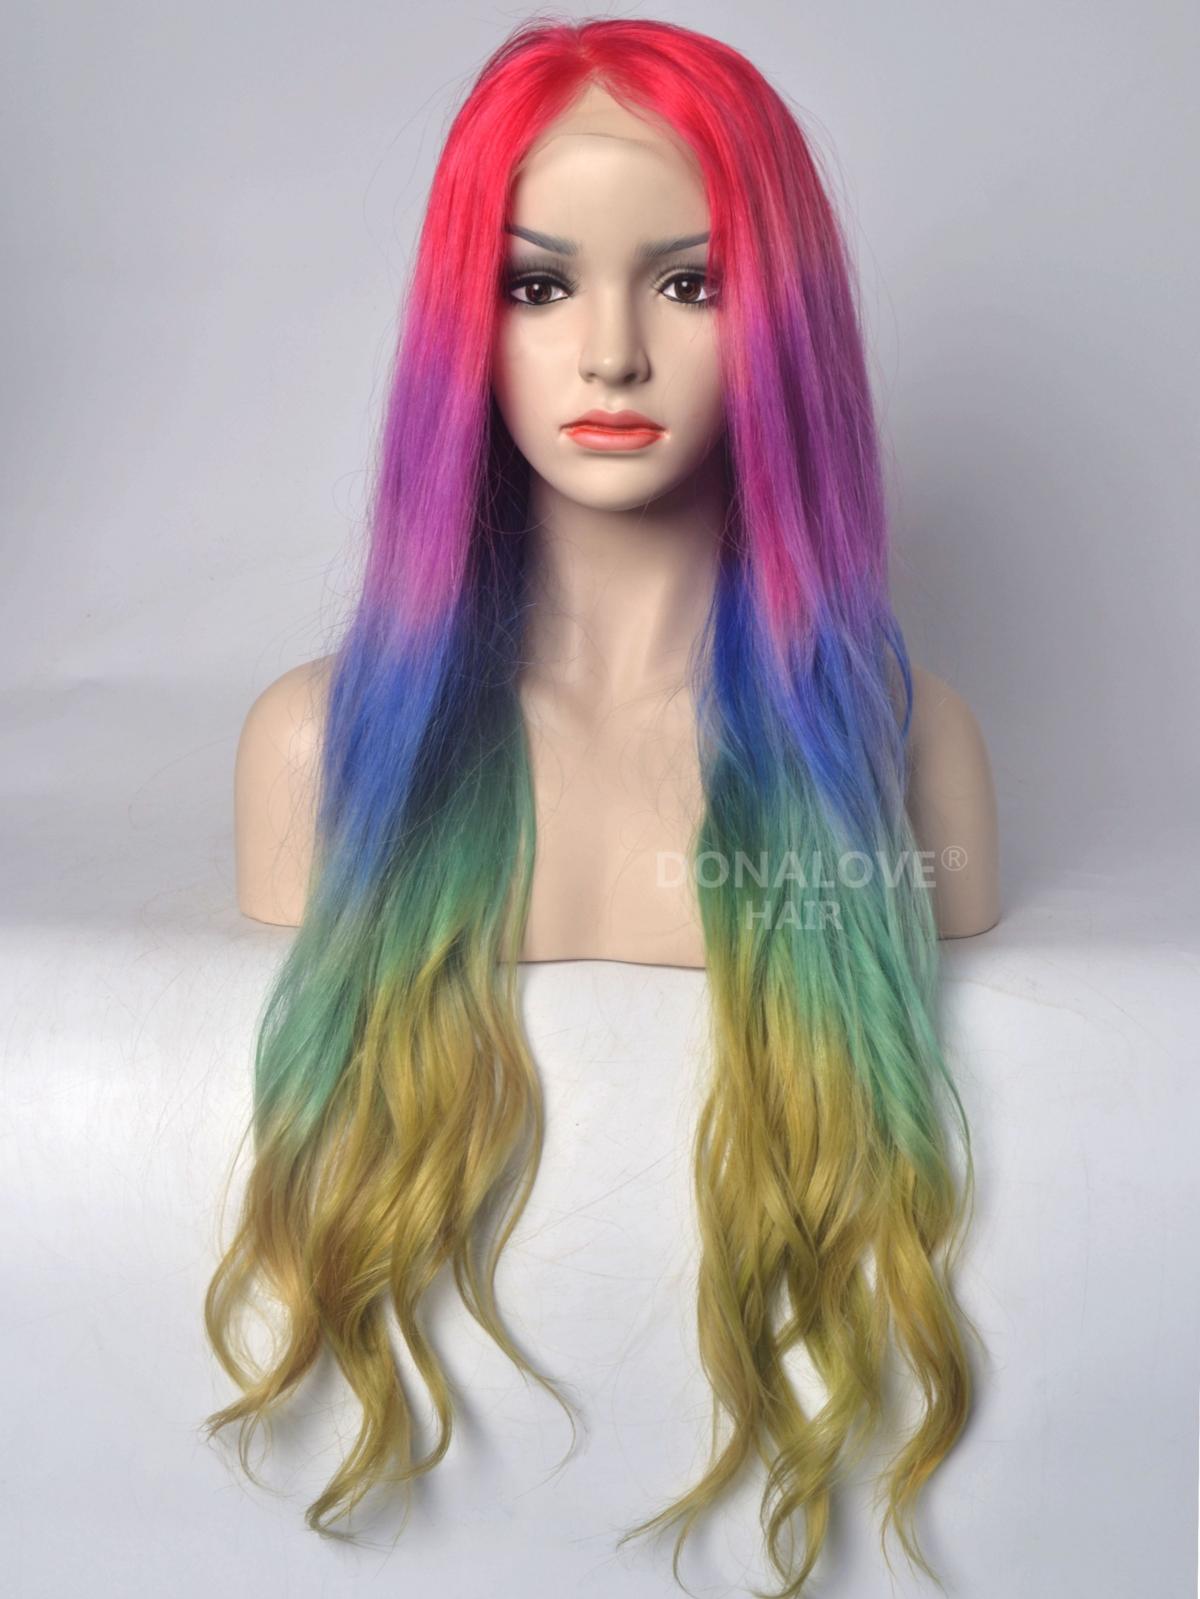 rainbow hair wig real hair